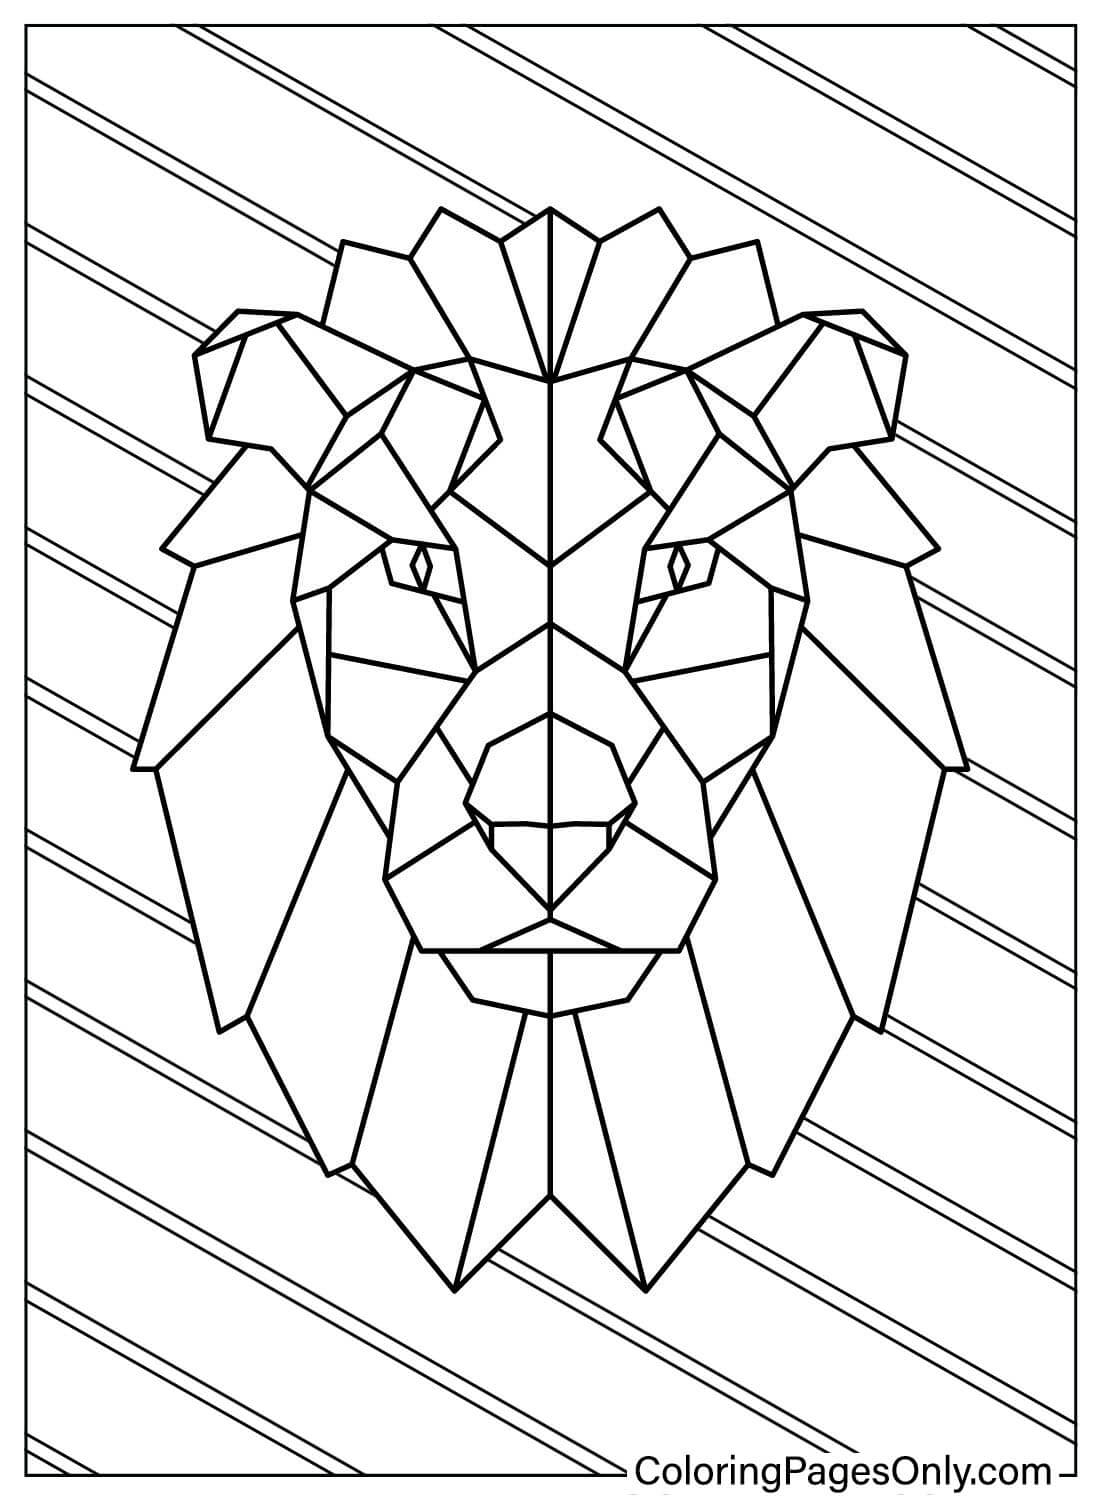 Página para colorear de león geométrico de Lion